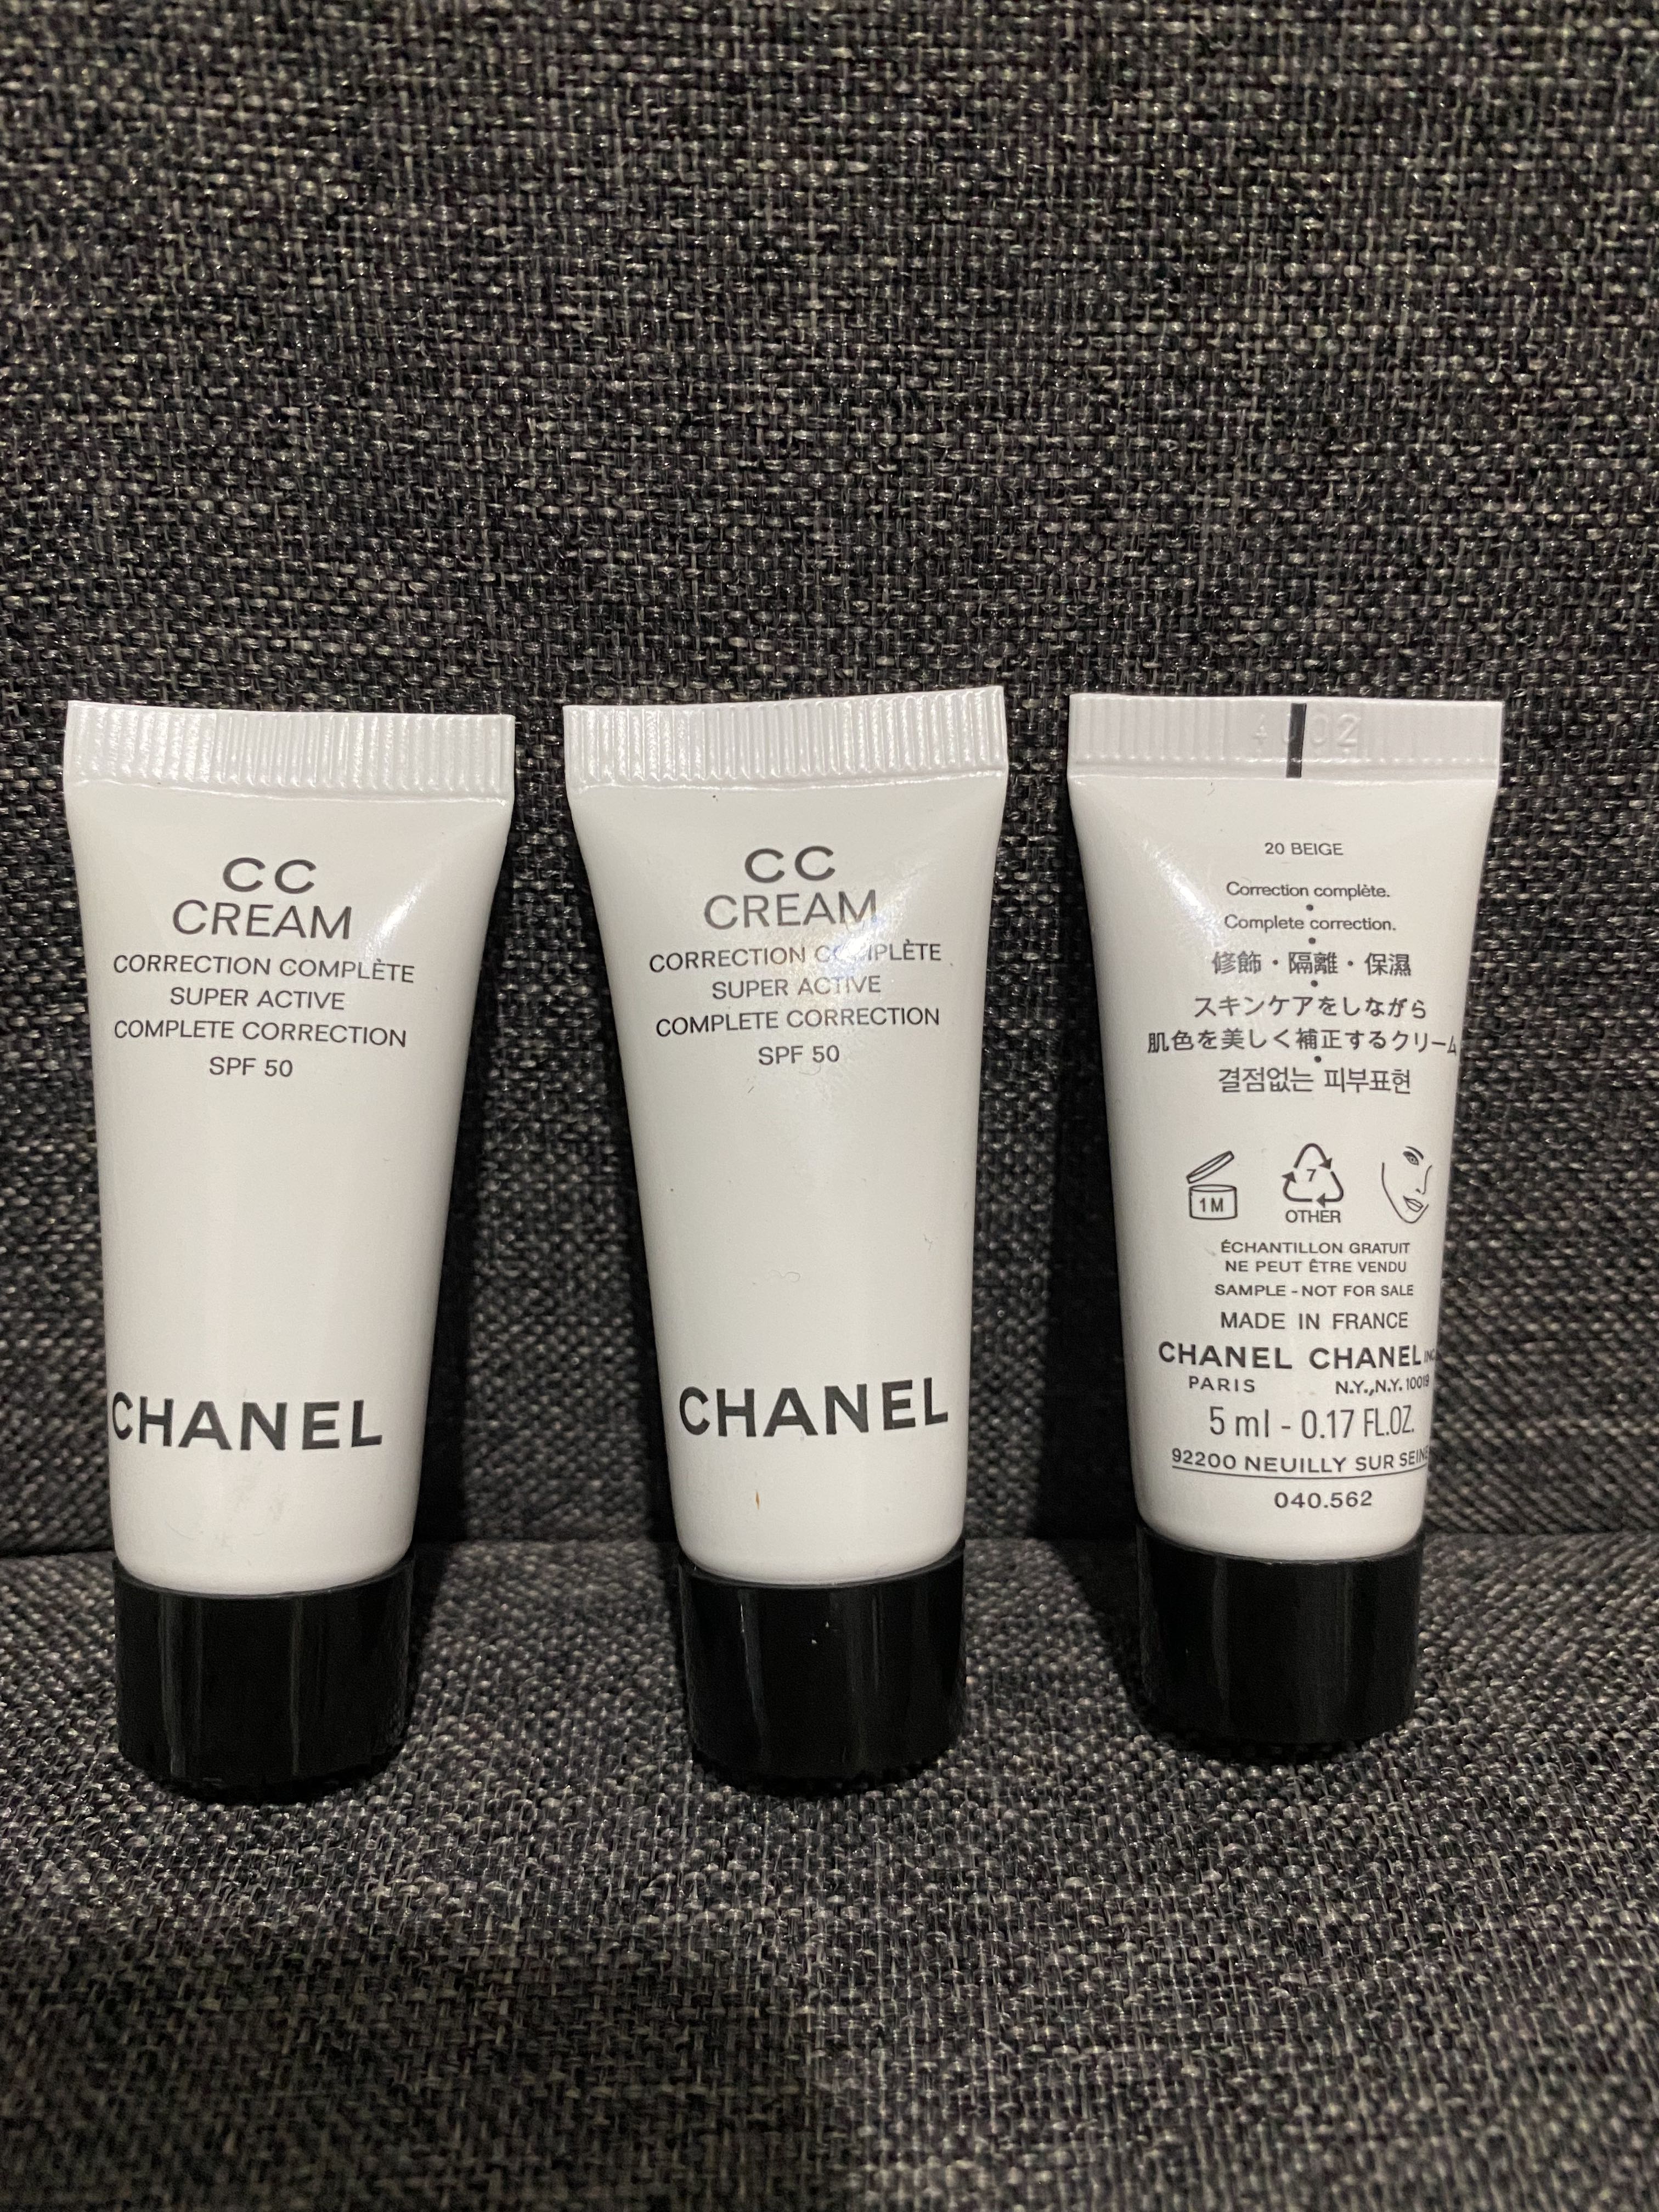 Chanel CC Cream 20 Beige Wear Test